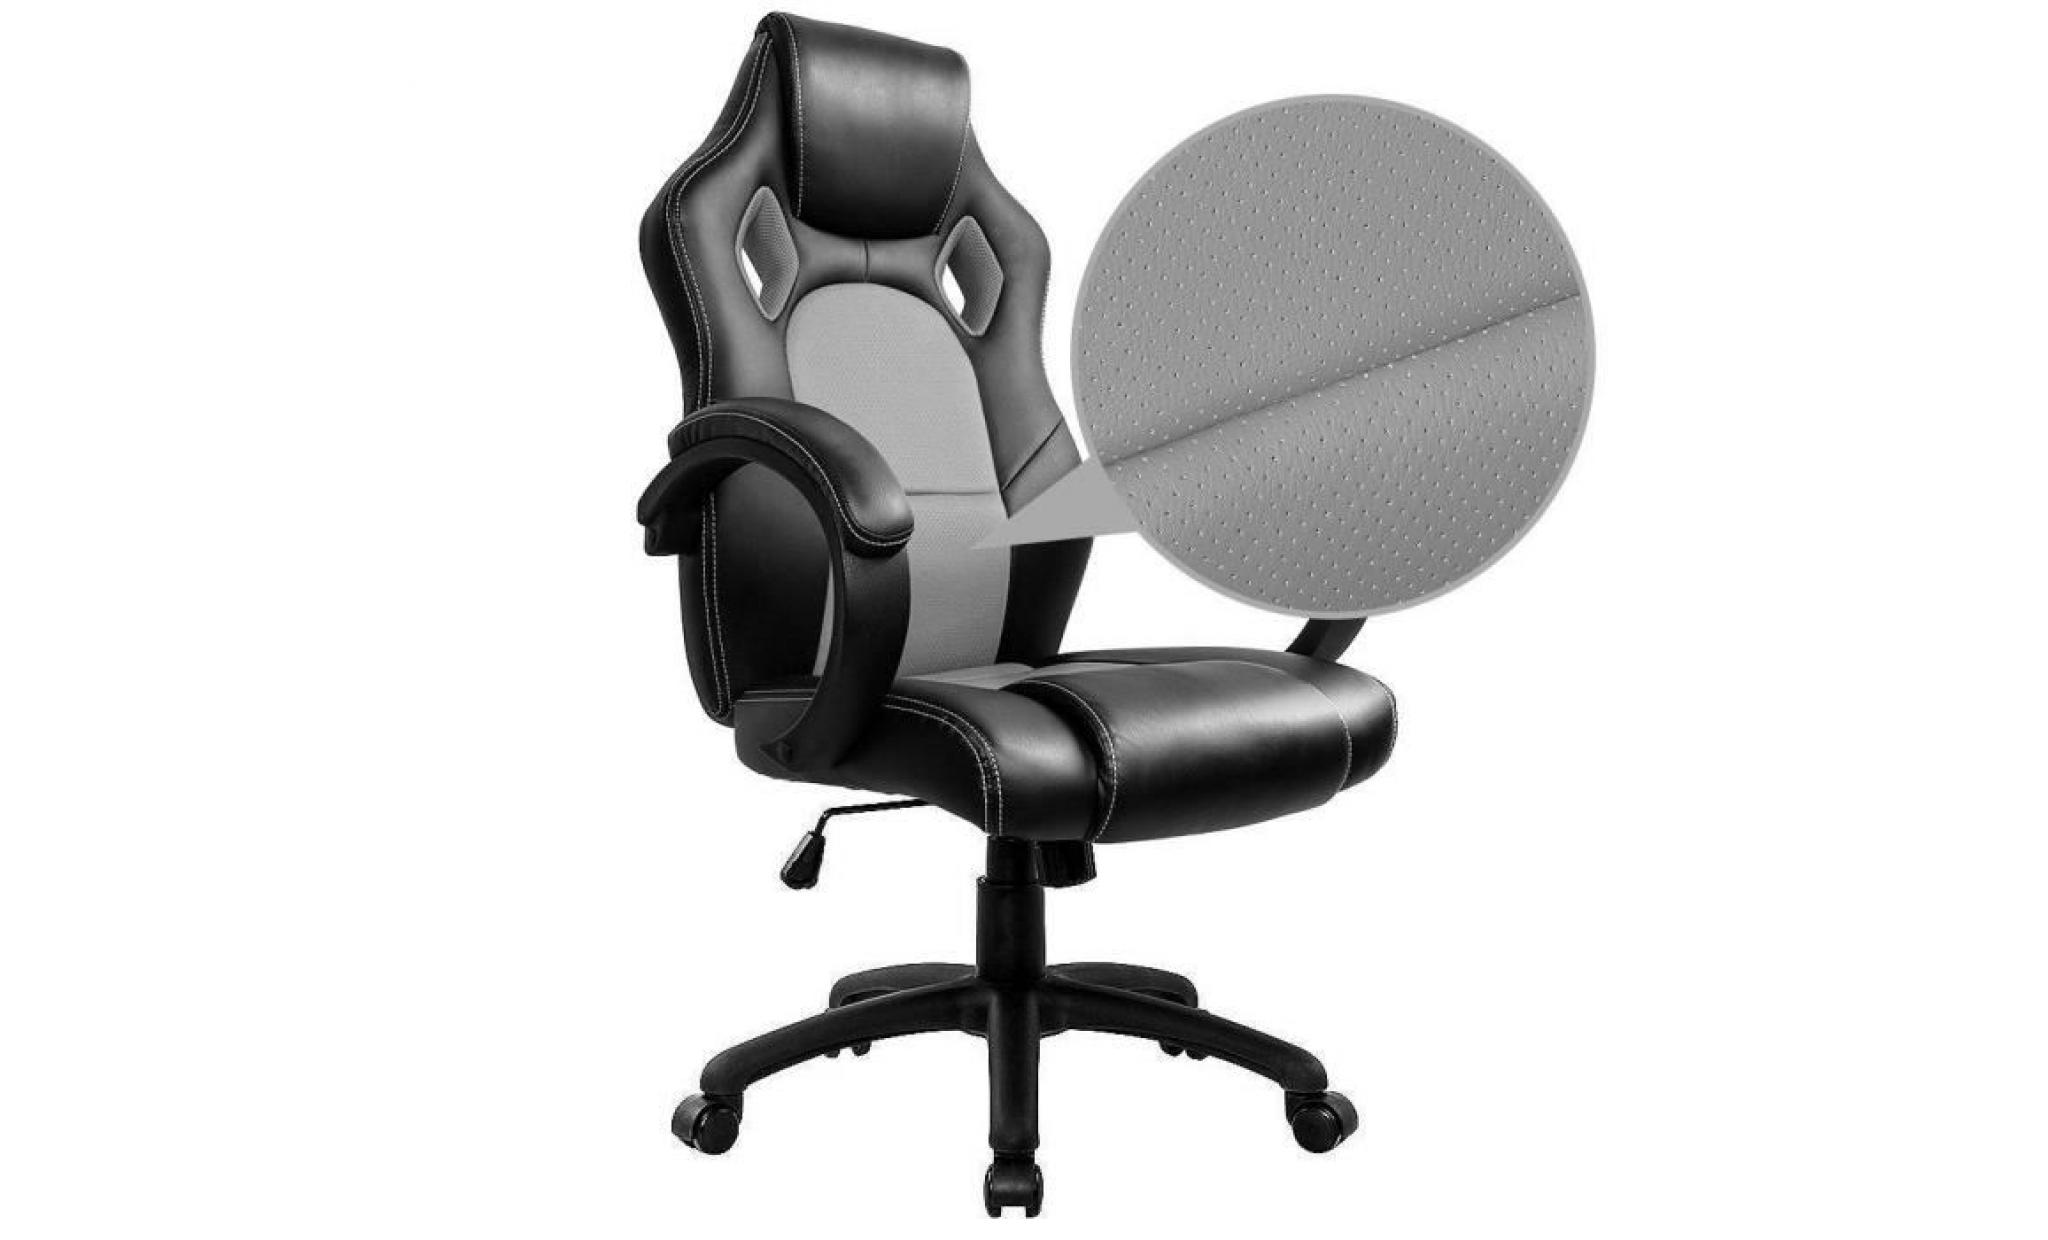 fauteuil de bureau gaming chaise   moderne confortable ergonomique en similicuir pu   hauteur réglable   noir   intimate wm heart pas cher